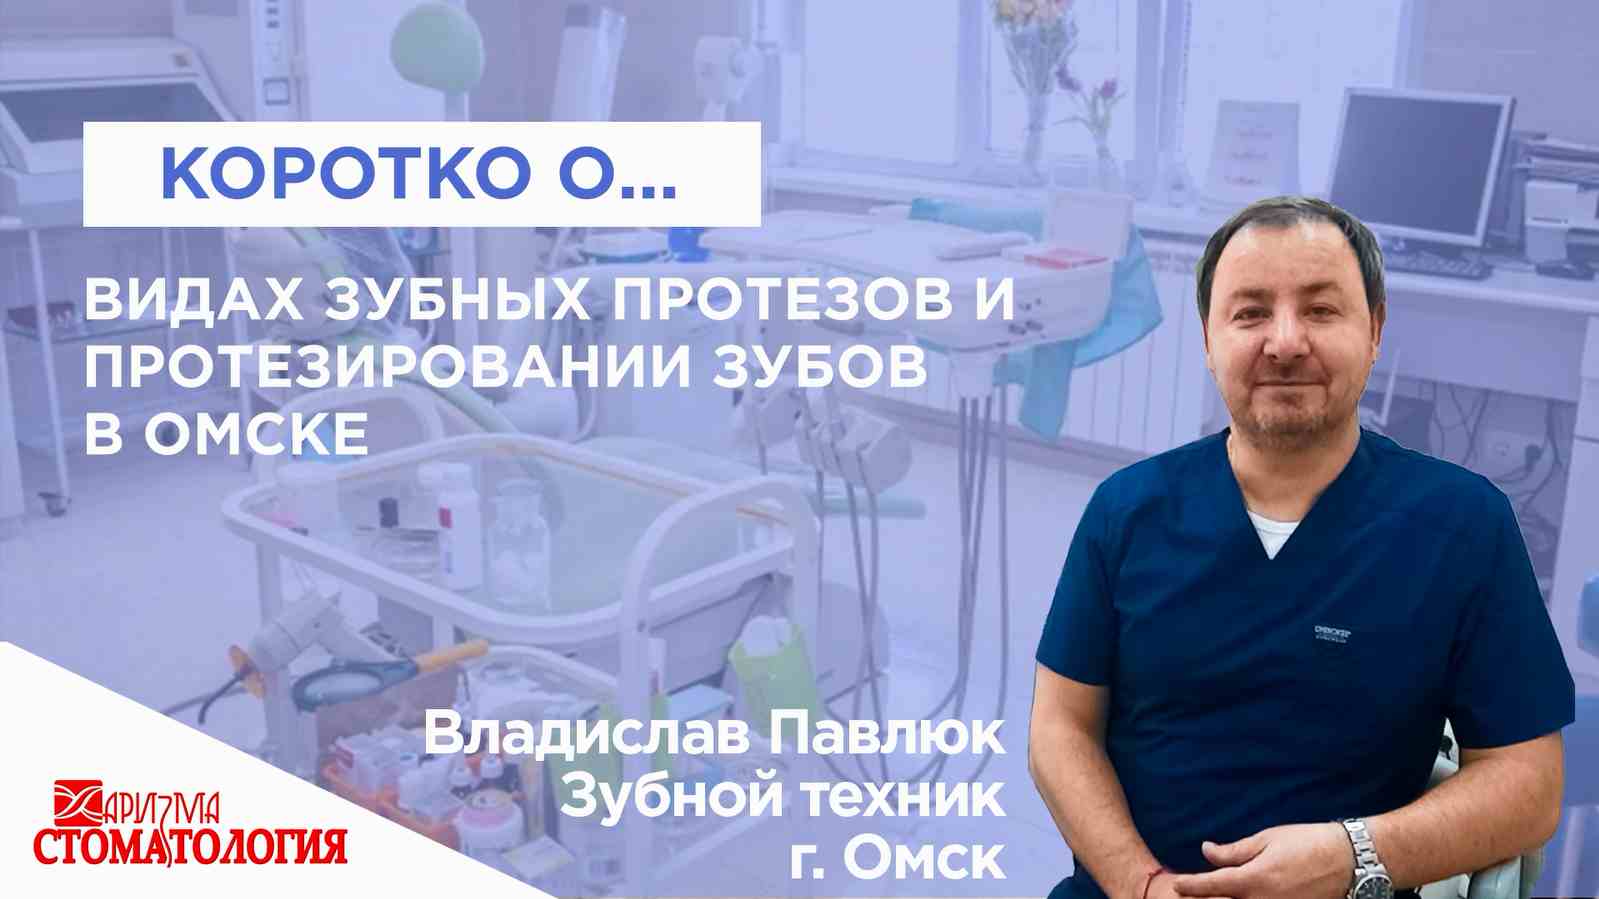 Виды и цены на зубные протезы в Омске все о зубных протезах